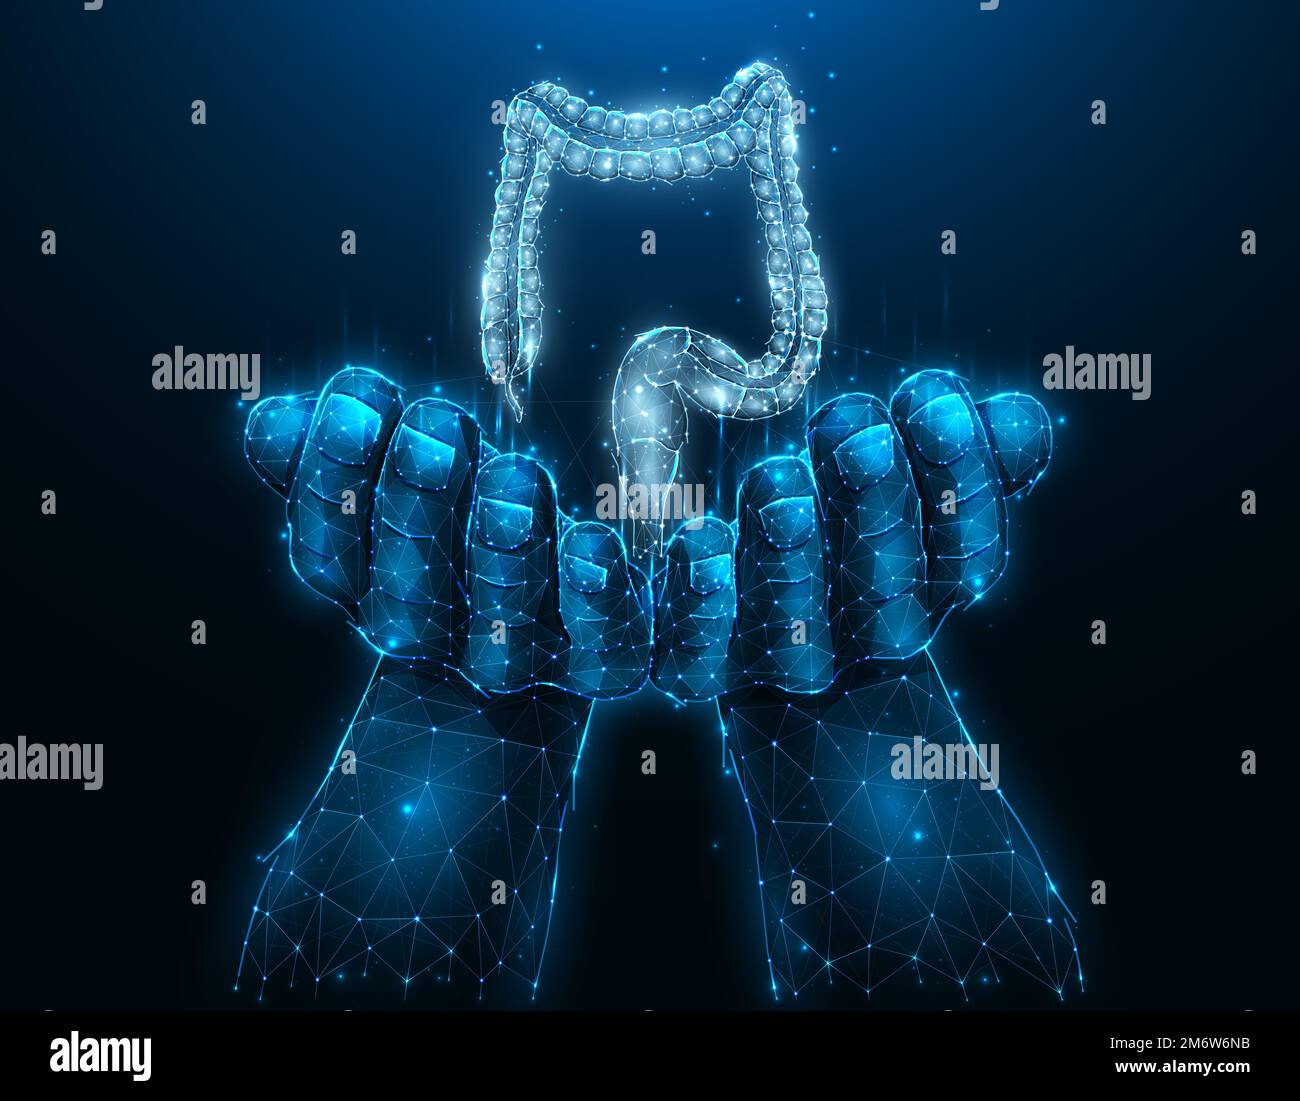 Donneur de côlon ou de gros intestin. Illustration vectorielle polygonale d'une main avec un gros intestin humain. Bannière médicale, modèle o Banque D'Images